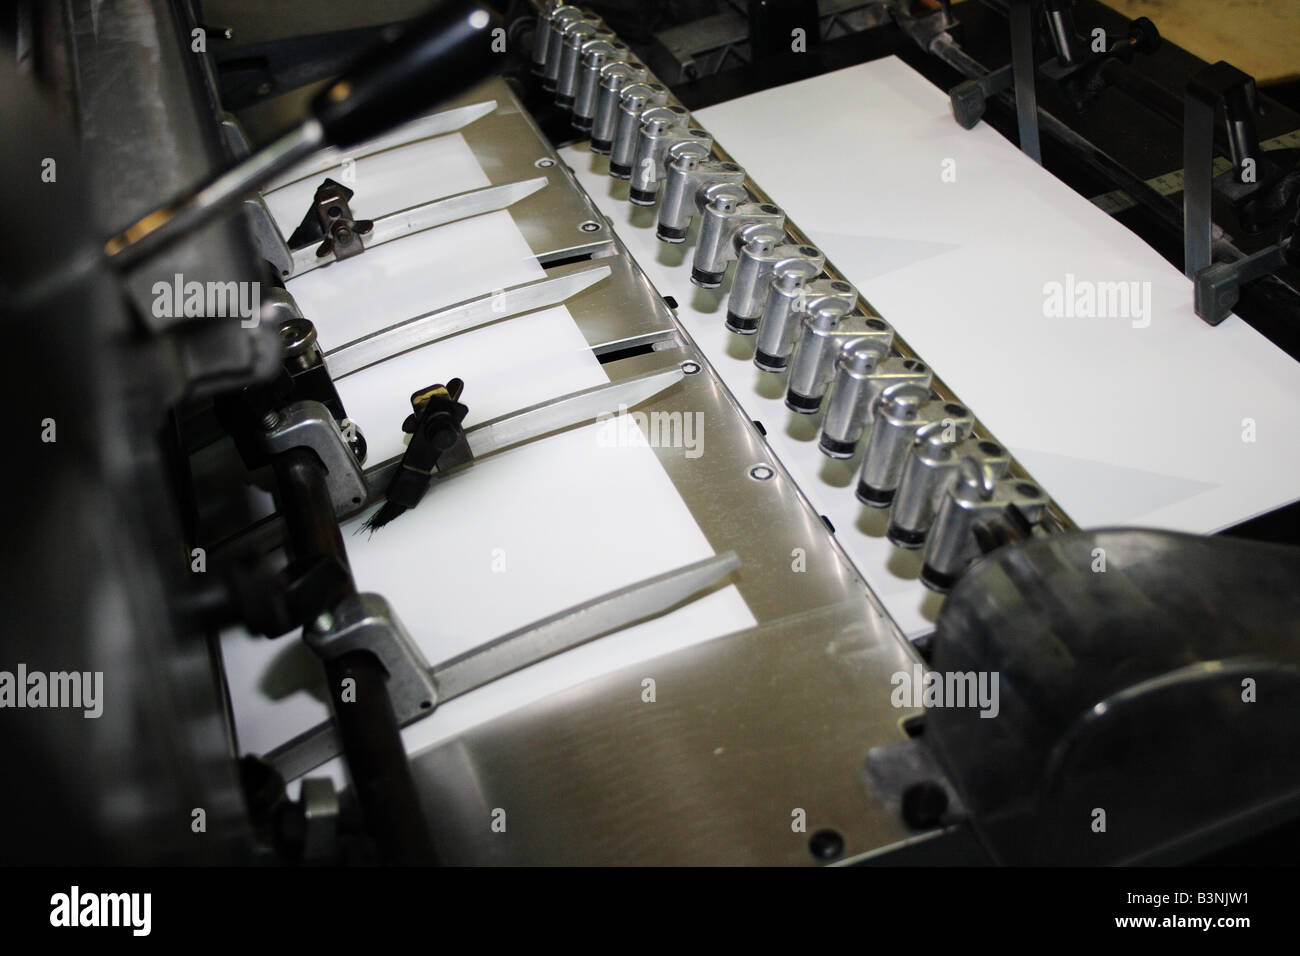 Printing machine Stock Photo